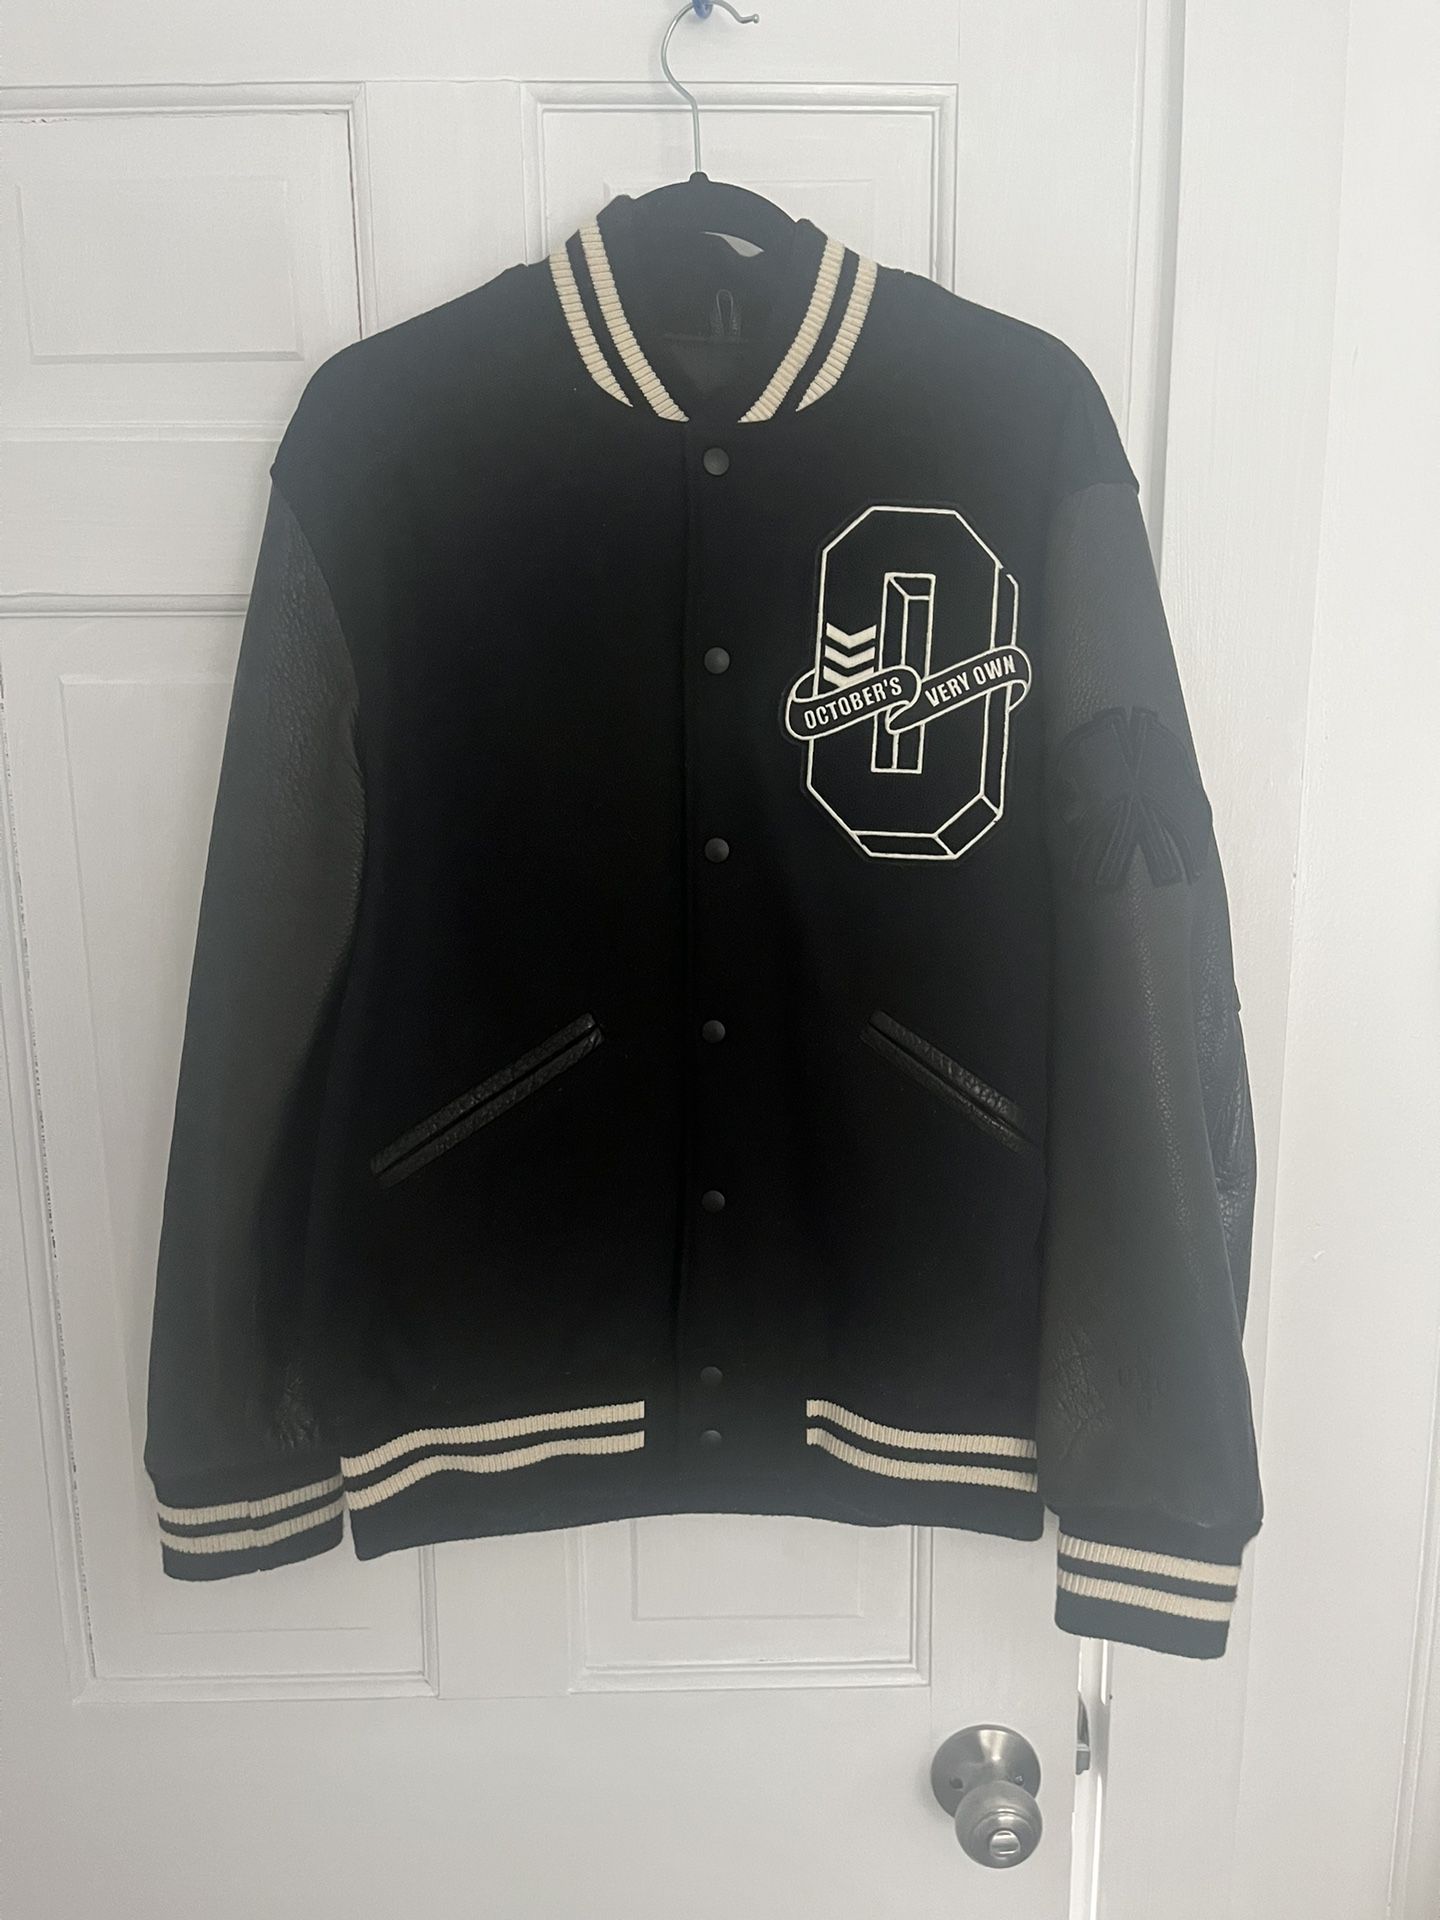 OVO Varsity Jacket